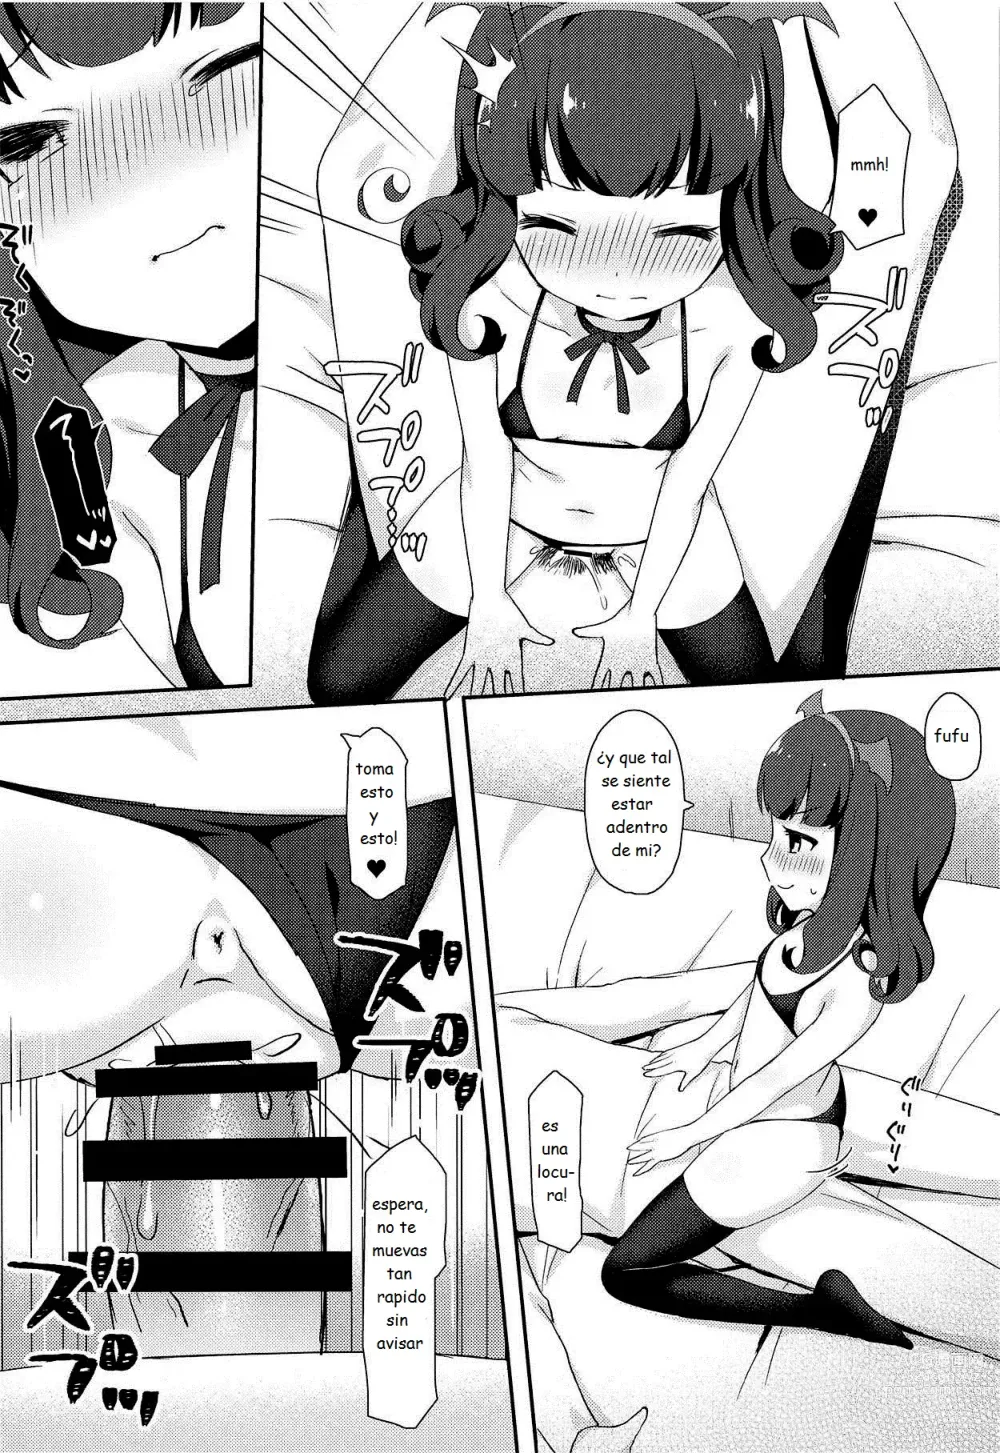 Page 11 of doujinshi sesion secreta con aroma-chan luego de la escuela